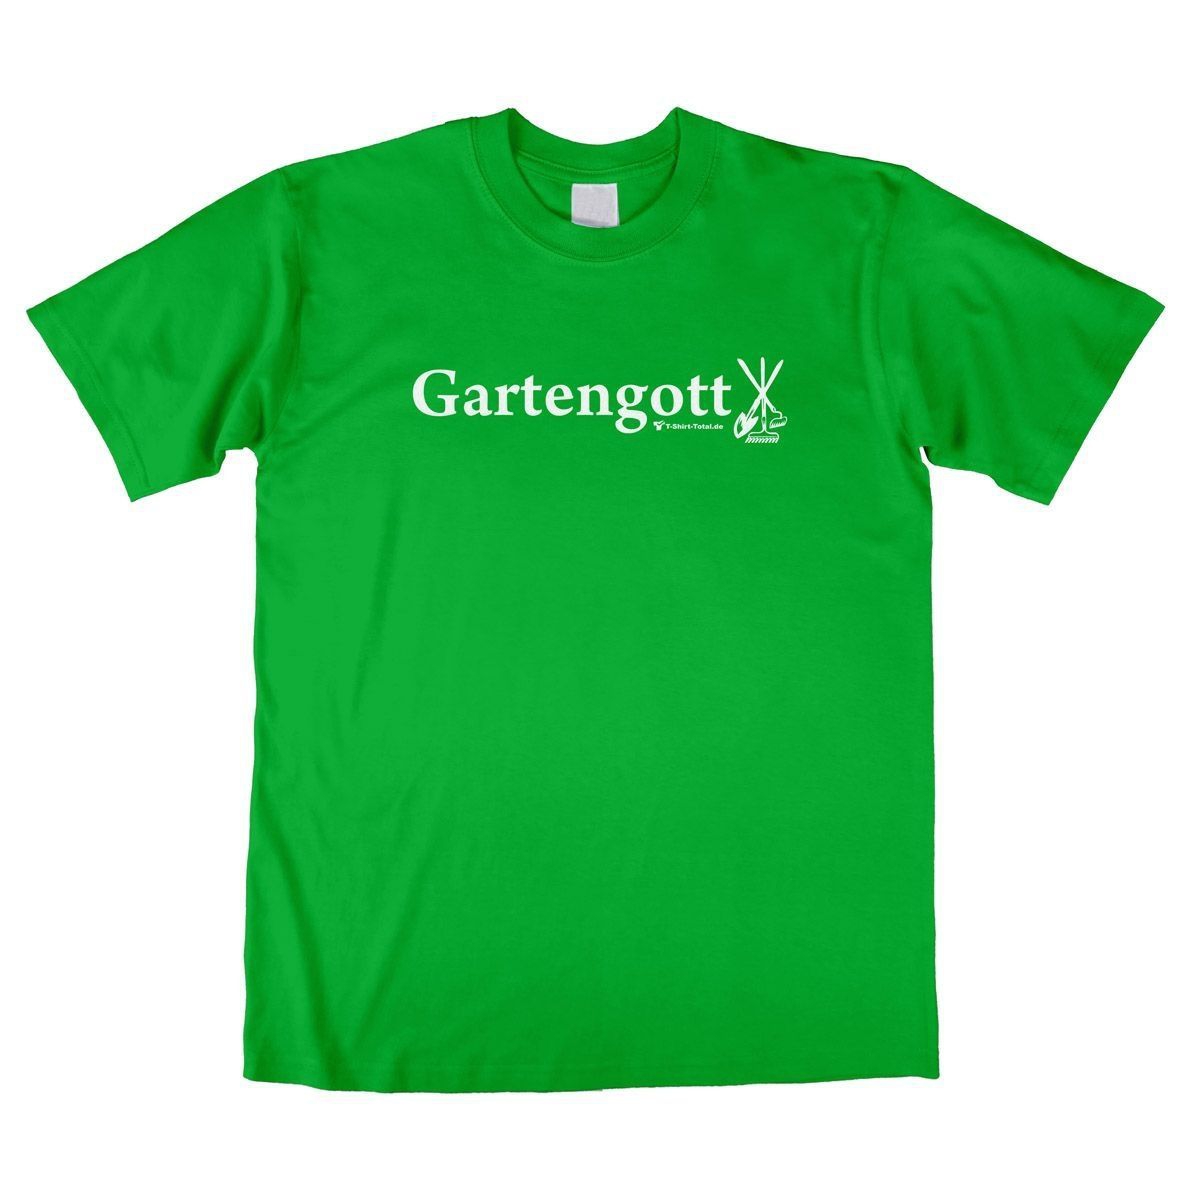 Gartengott Unisex T-Shirt grün Extra Large